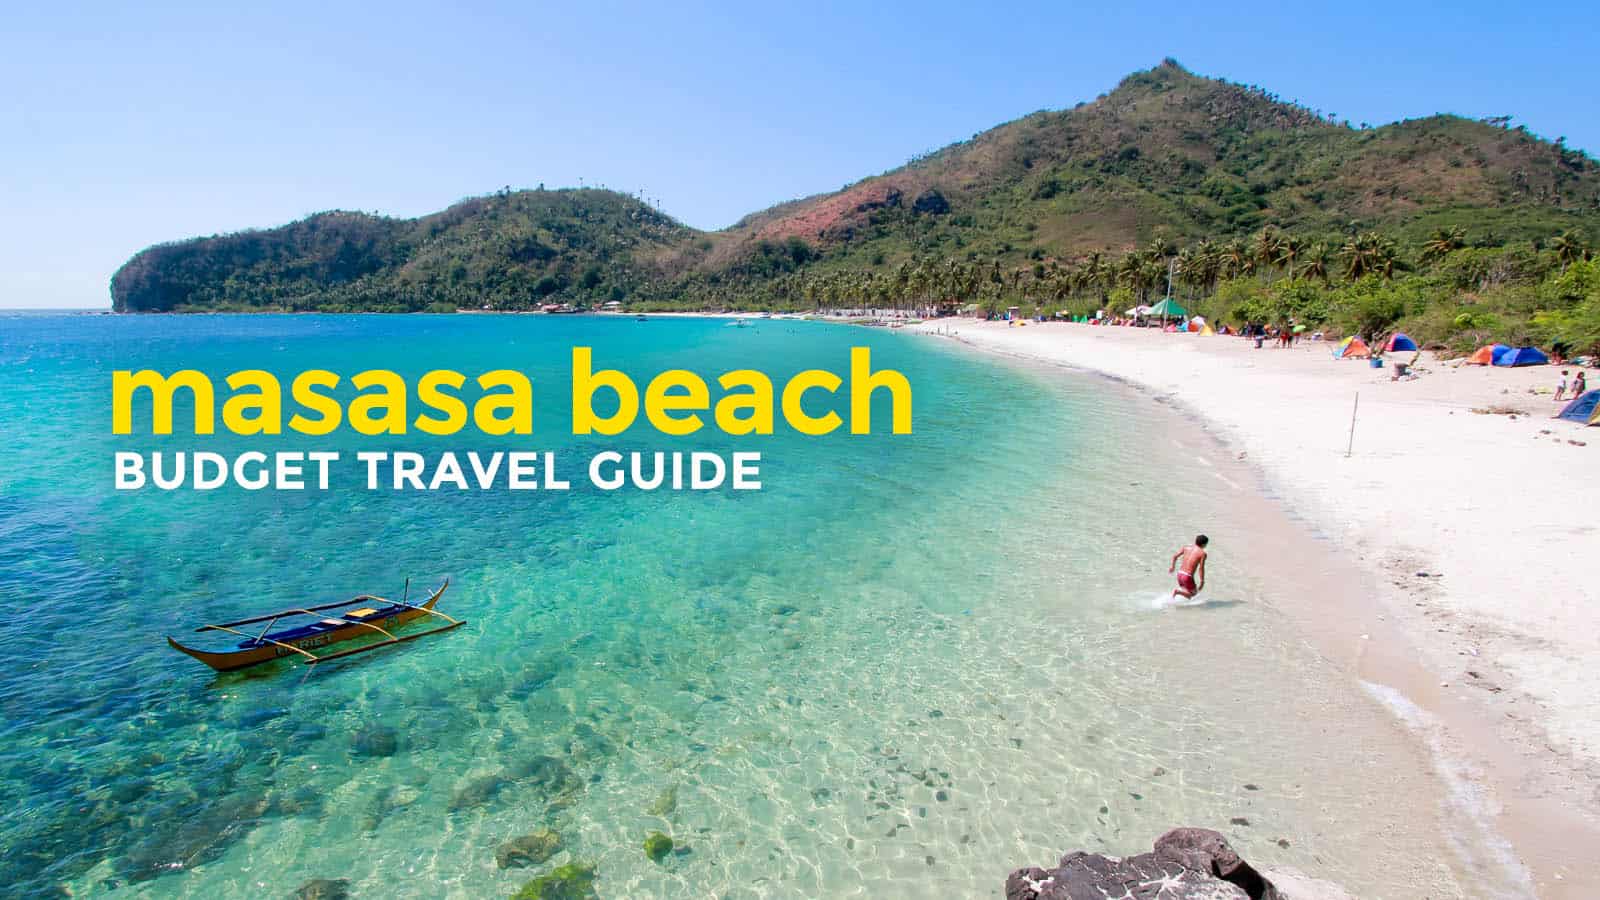 马萨沙海滩的预算:旅行指南和行程